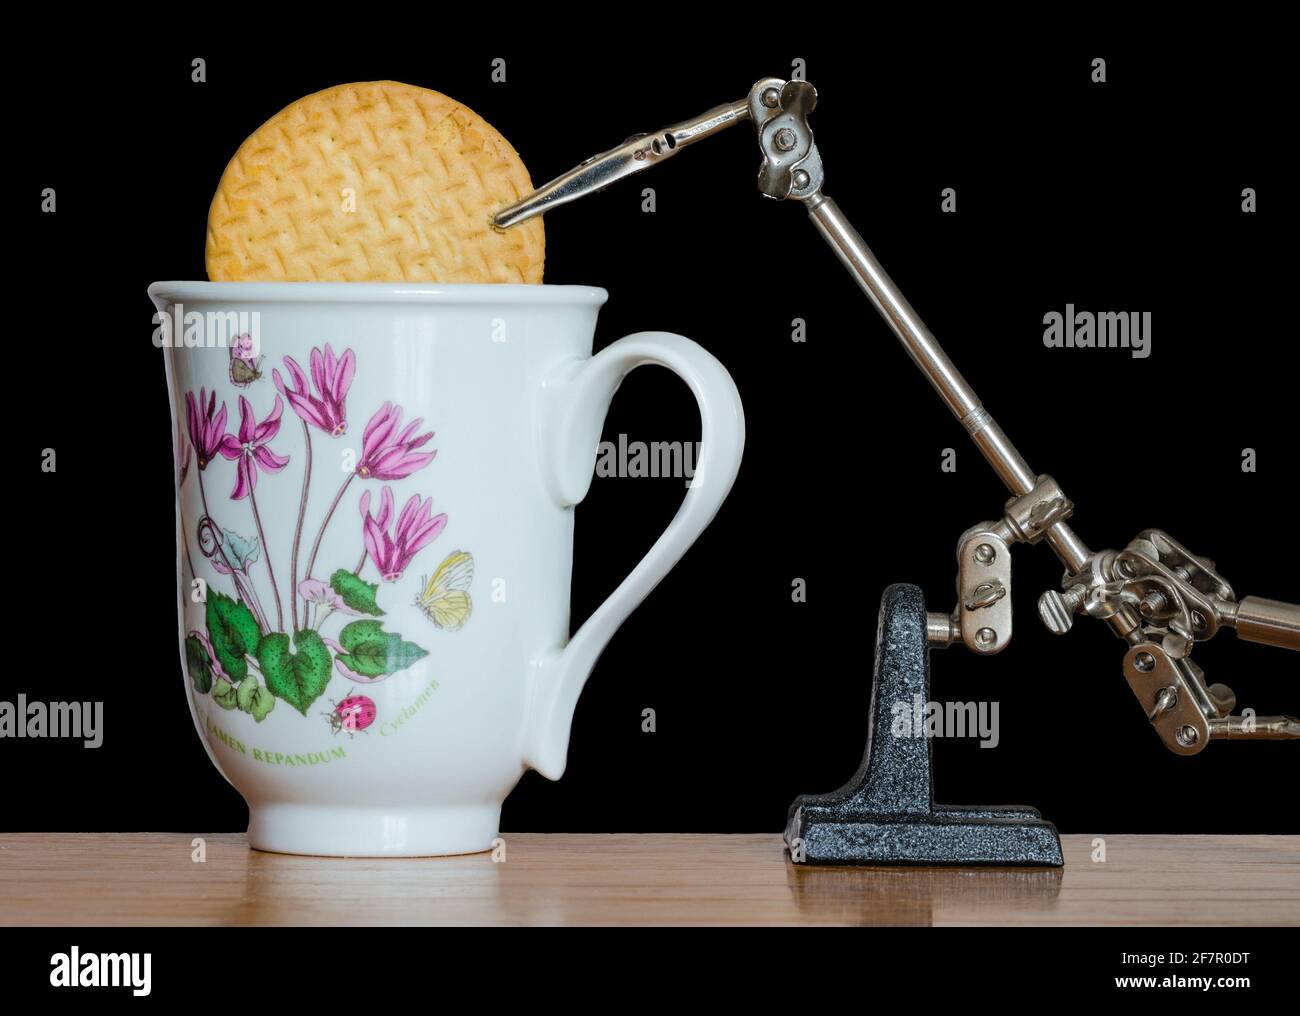 Brazo del robot que prepara una galleta en el café. Ejemplo de una invención estúpida, tonta, loca e inútil de una máquina inútil. Foto de stock